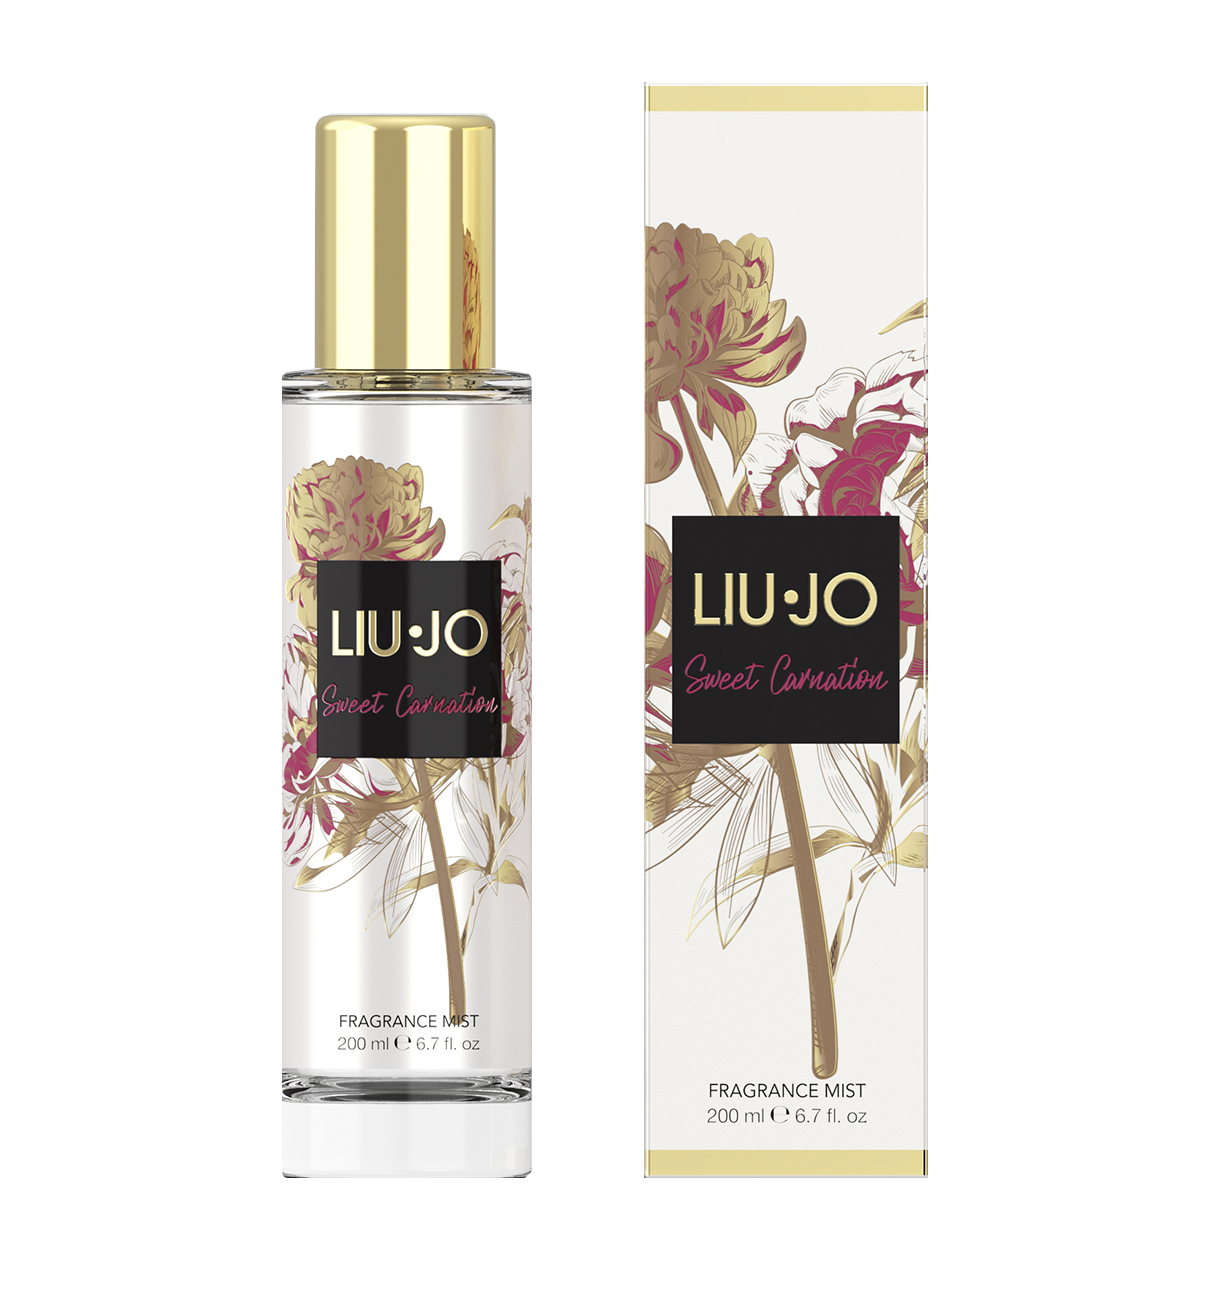 Liu Jo Fabulous Orchid & Sweet Carnation Body Mists ~ New Fragrances